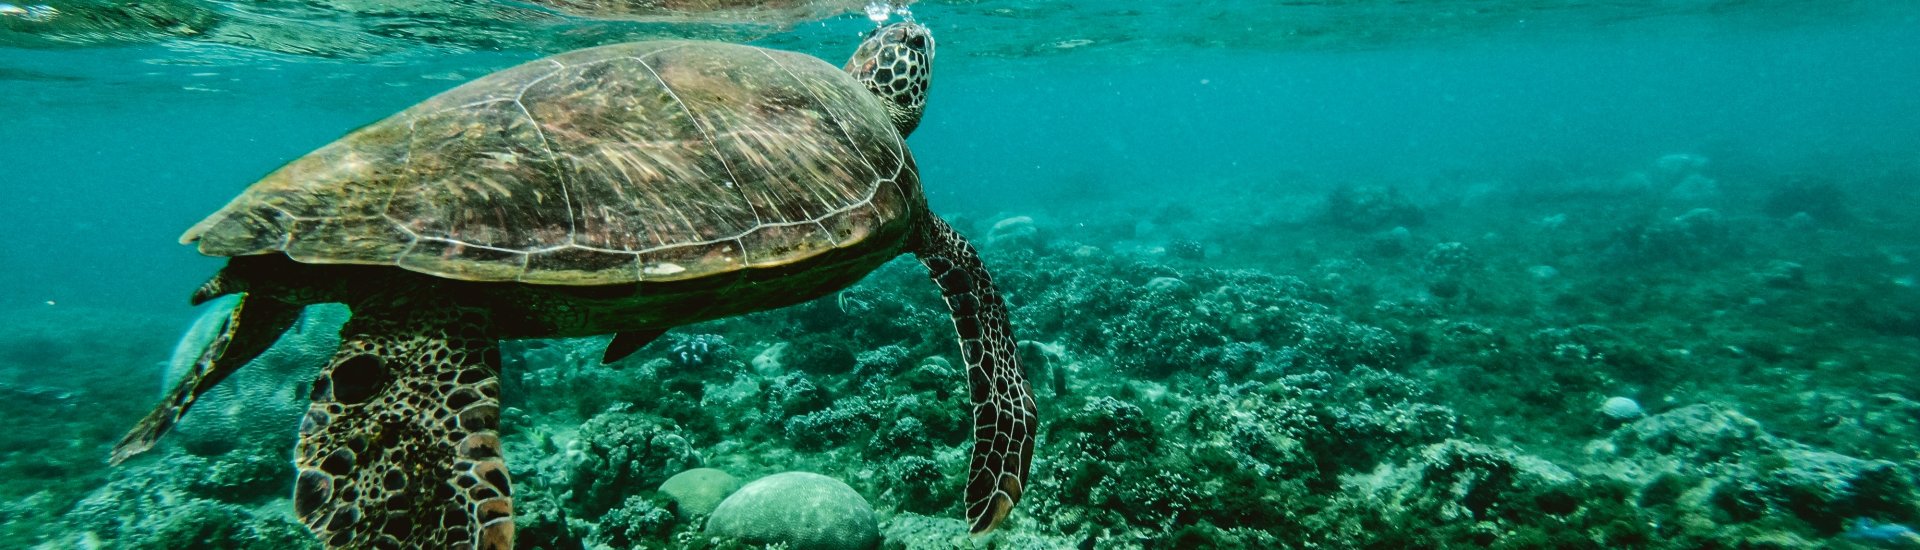 Een schildpad zwemt bij het Great Barrier Reef voor de kust van Australië.